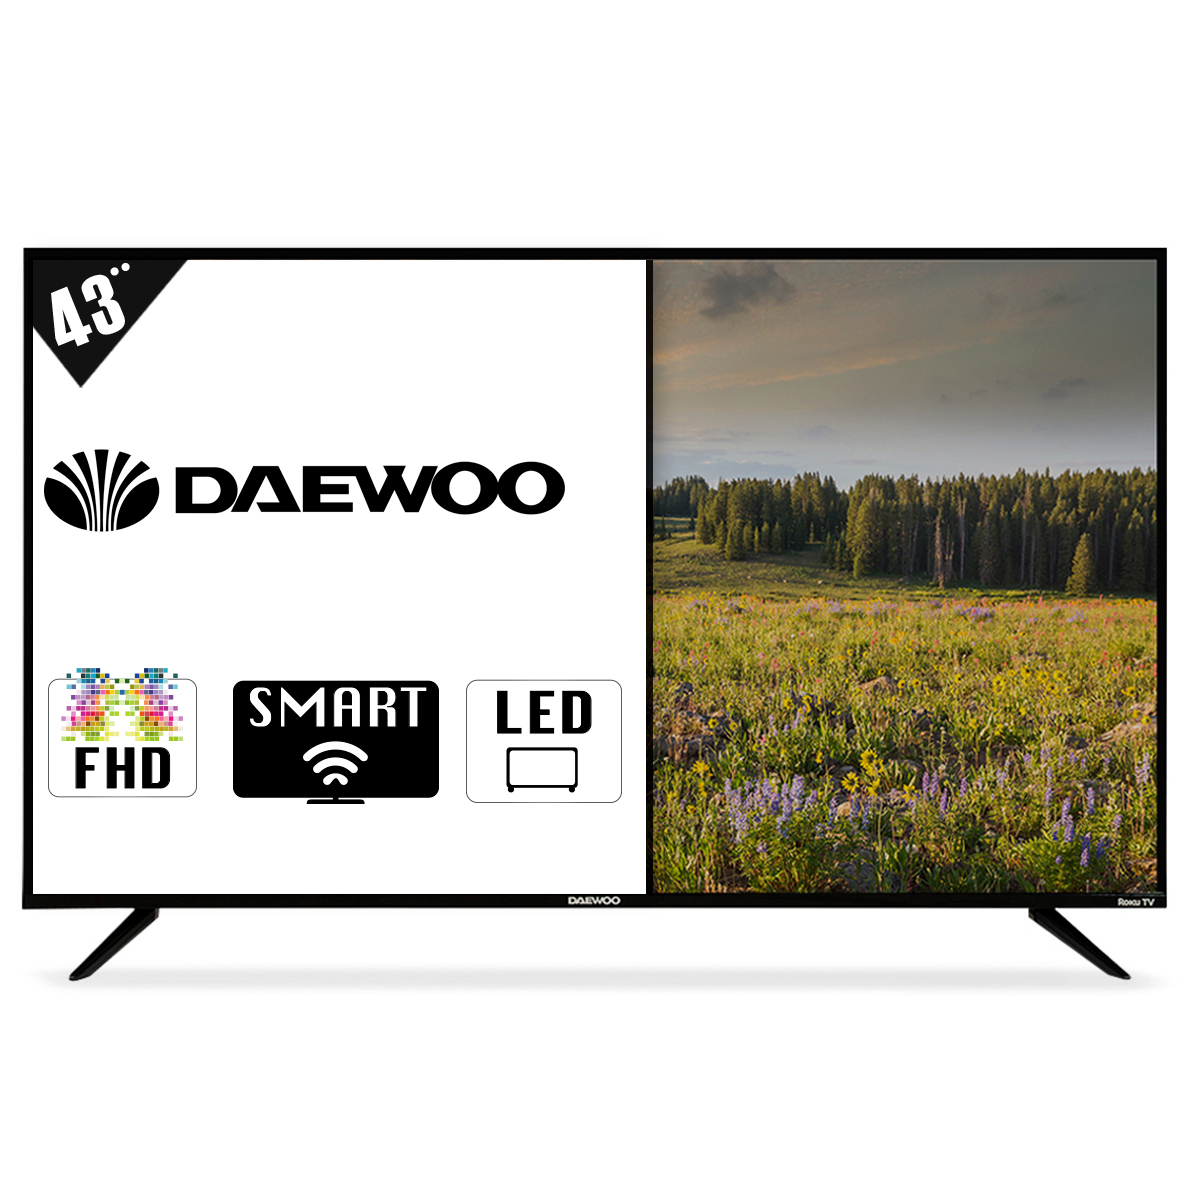 Pantalla Daewoo Smart TV Roku Frameless 43 pulg. DAW43FRF FHD